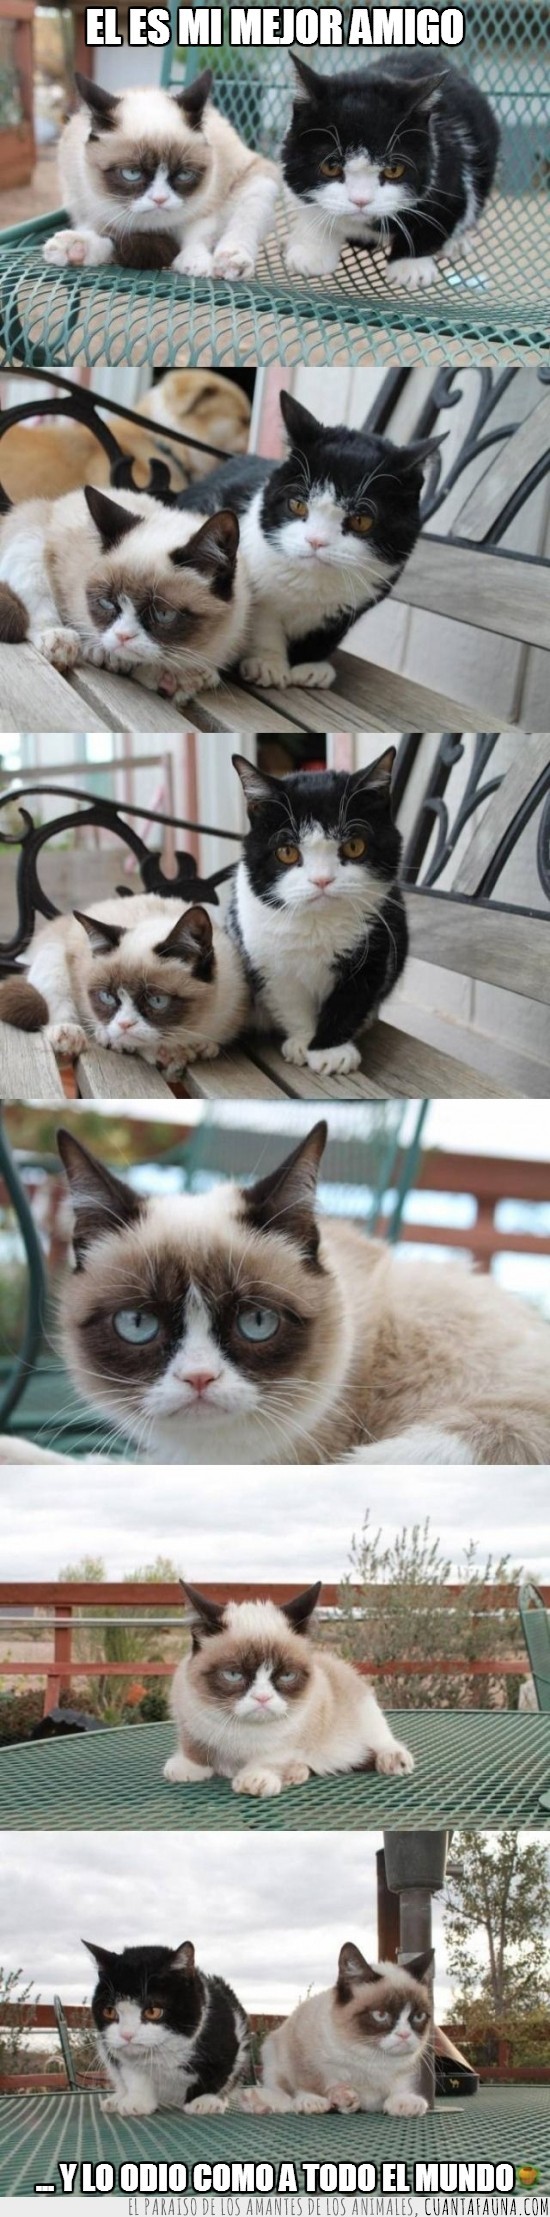 gato gruñon,tard,grumpy cat y su amigo,odio